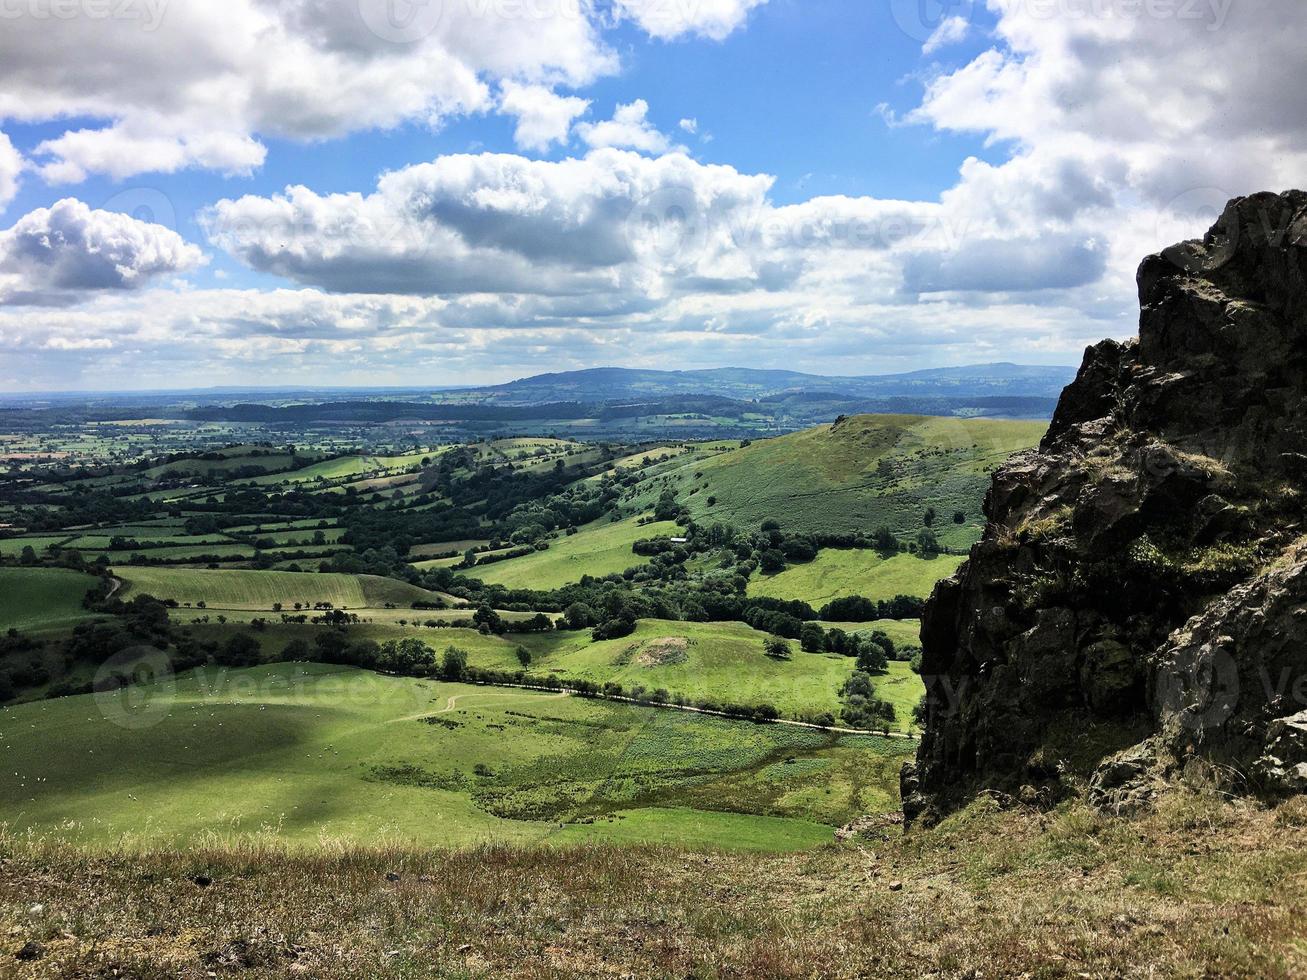 una vista de las colinas caradoc en shropshire foto